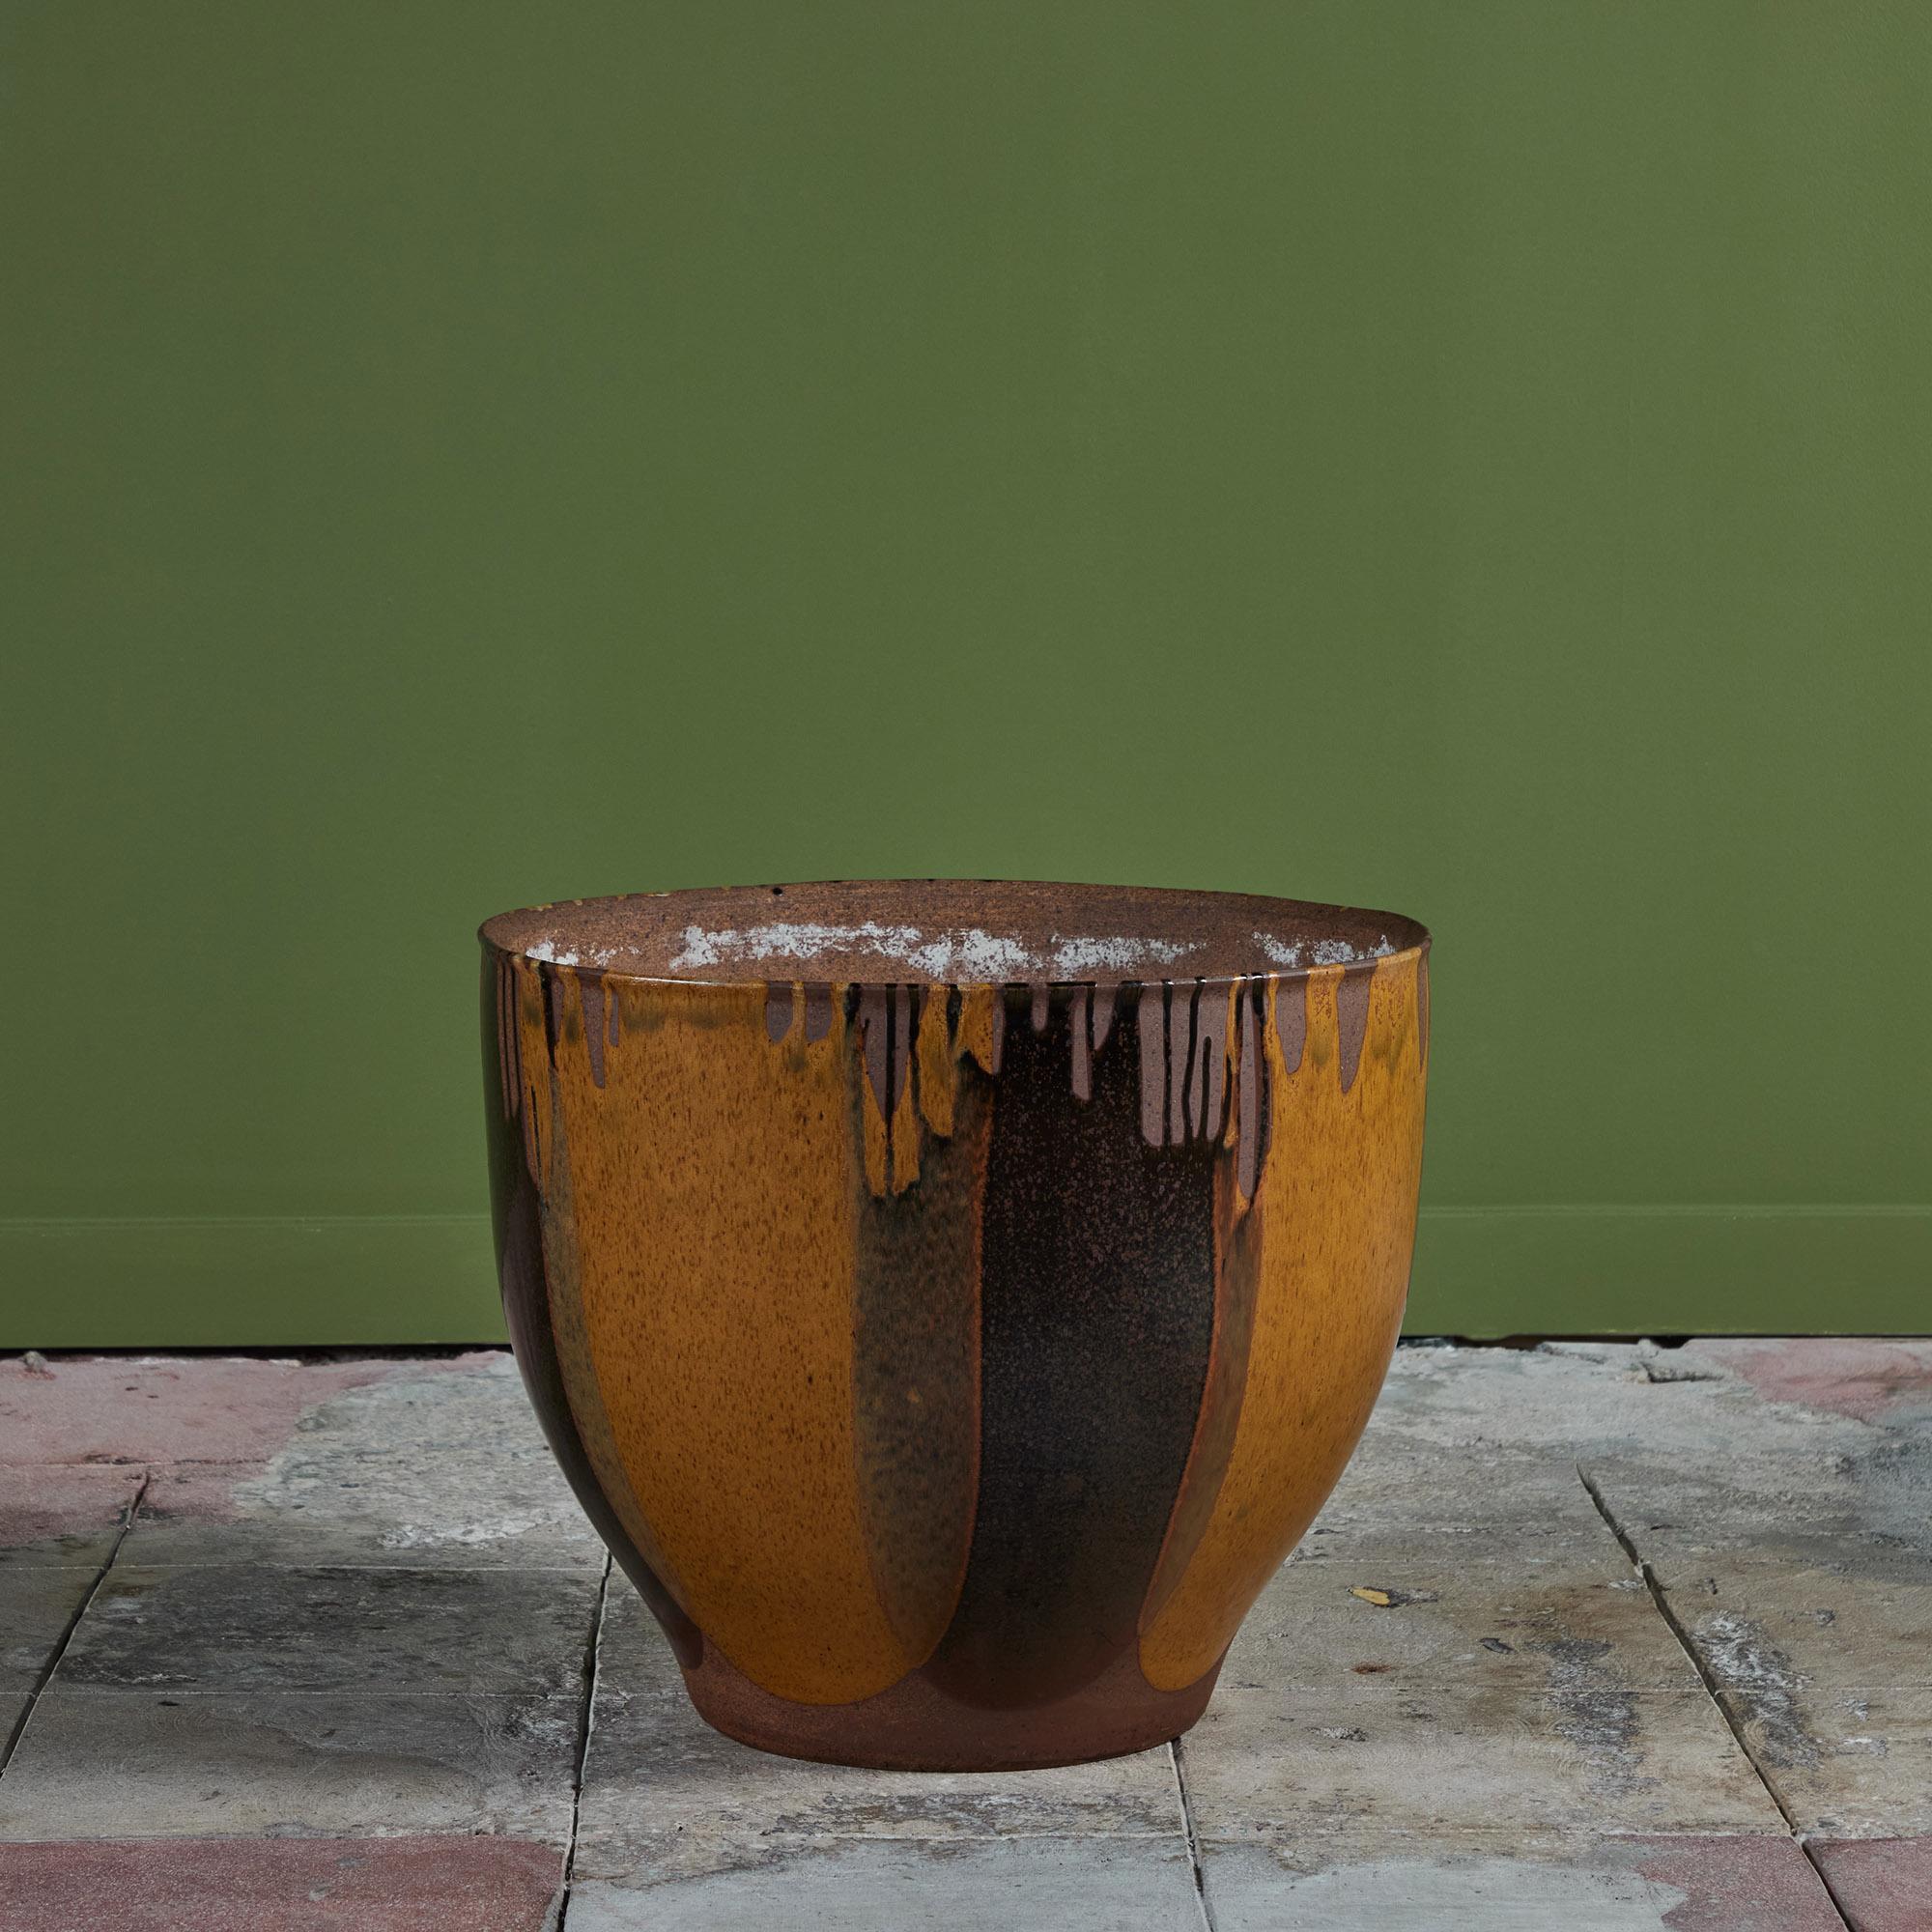 Ein glockenförmiges Pflanzgefäß von David Cressey für die Pro/Artisan Collection von Architectural Pottery mit Cresseys charakteristischer 